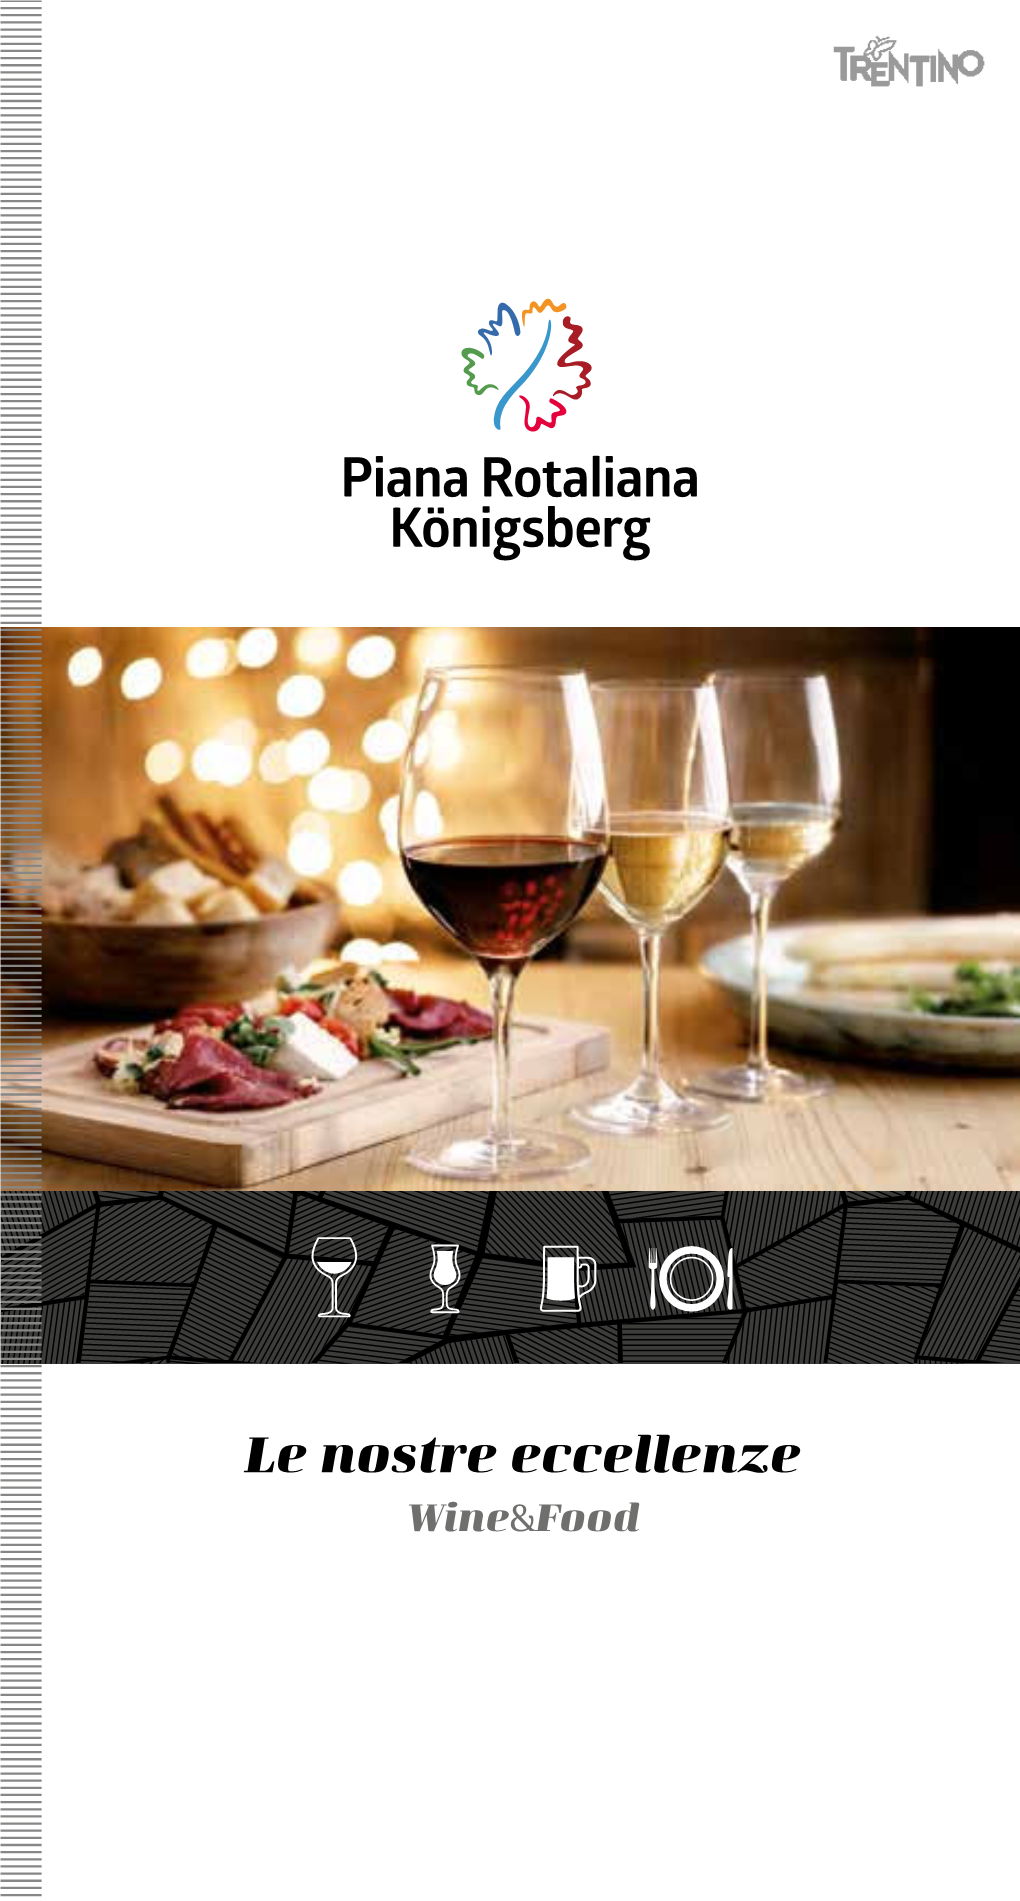 Piana Rotaliana Königsberg Wine & Food.Pdf